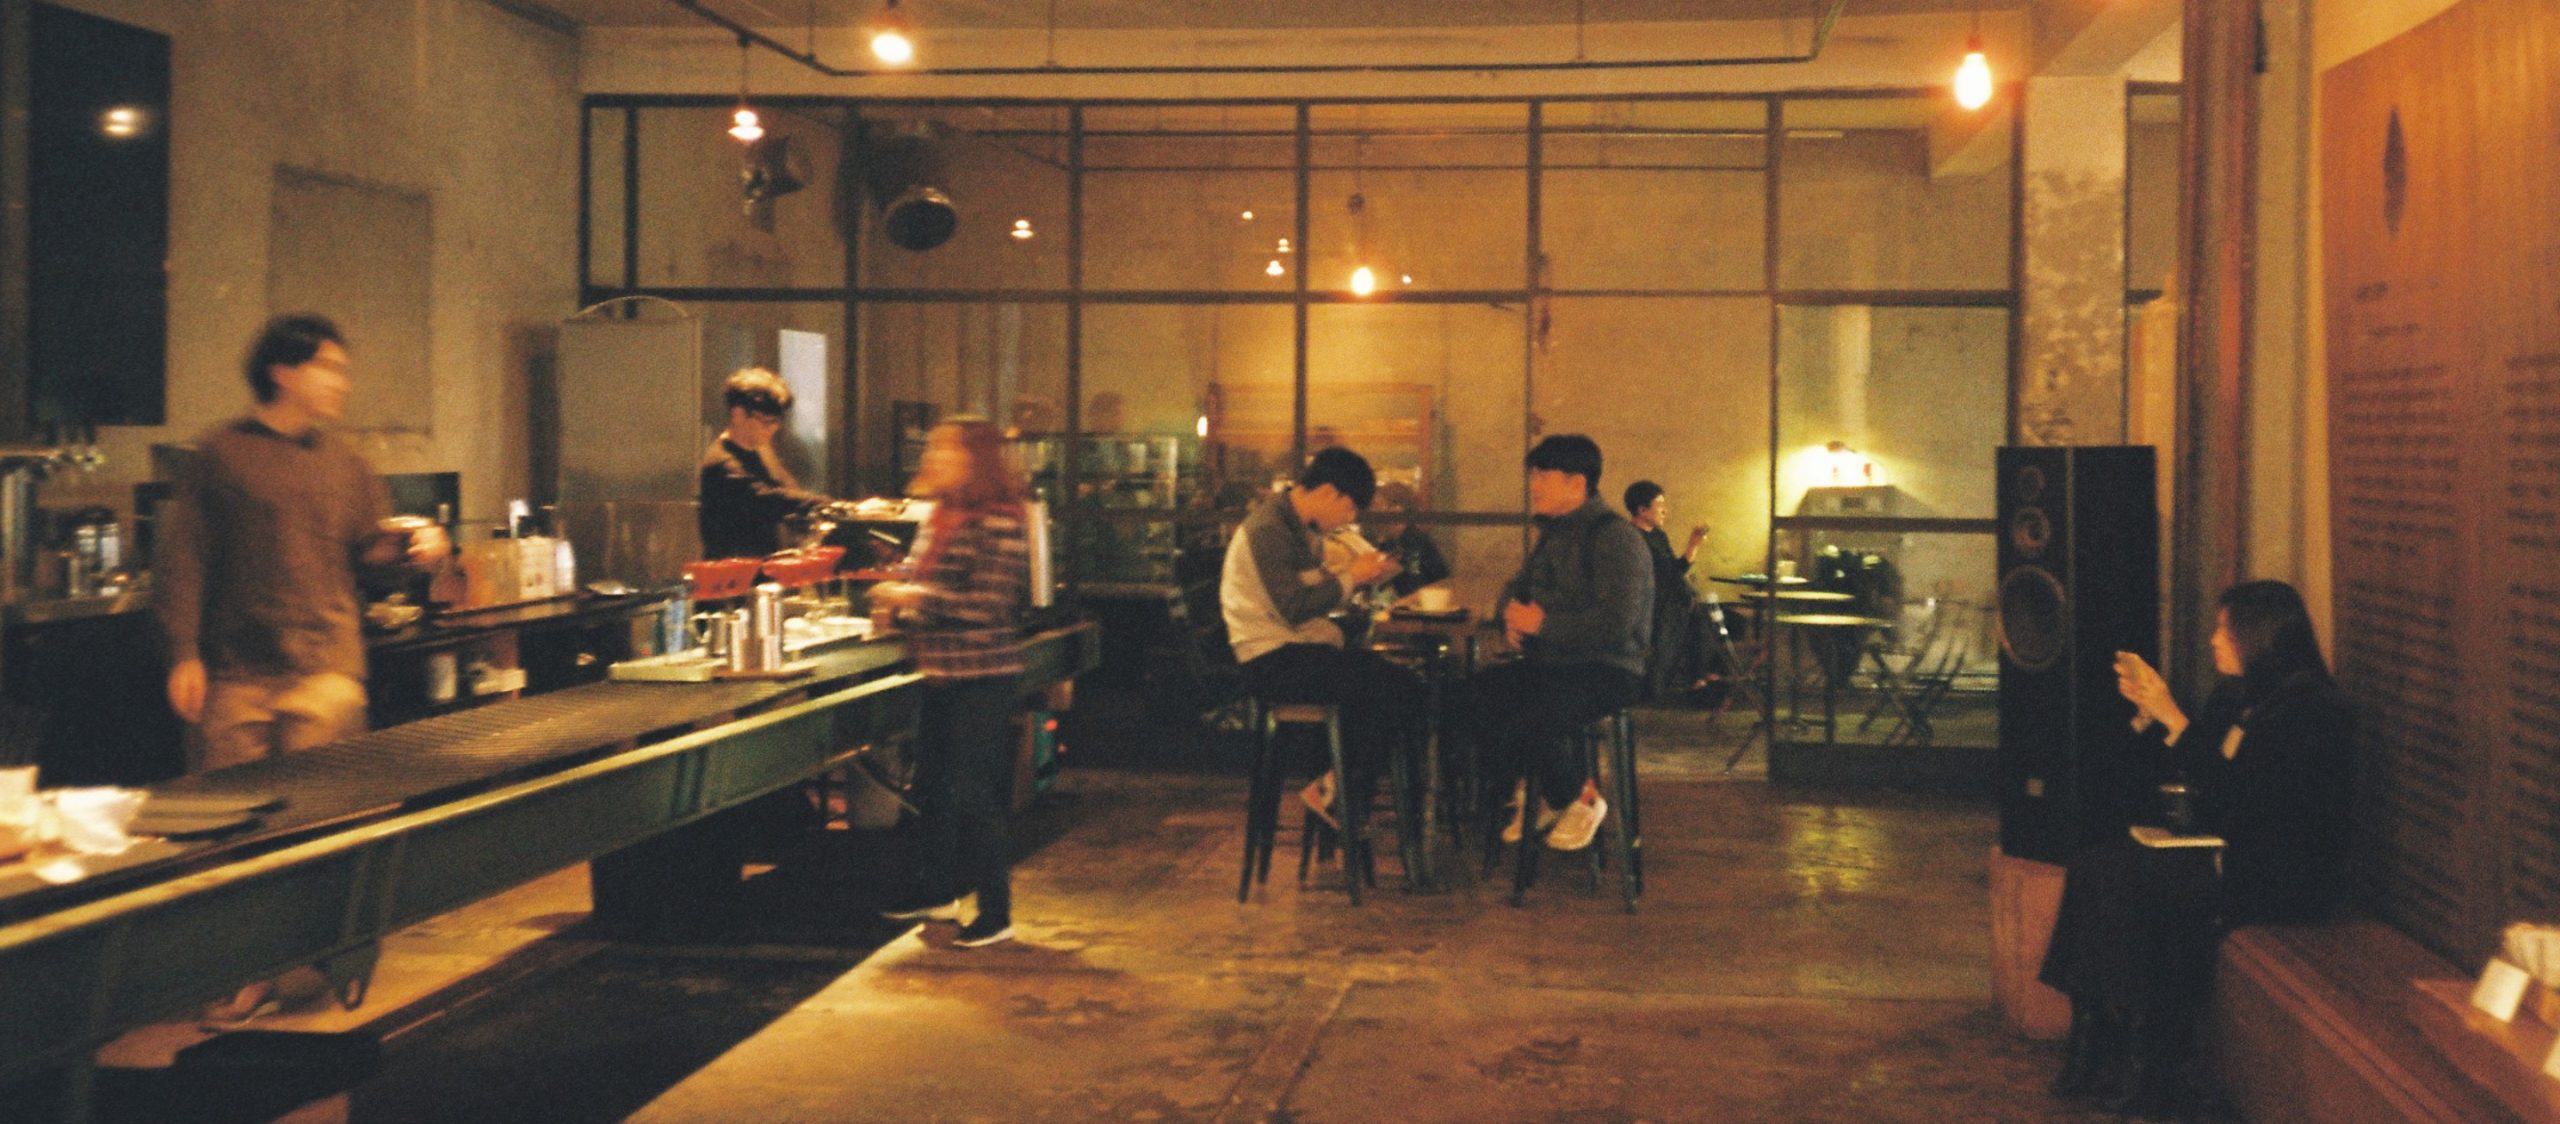 10 ร้านกาแฟที่เปลี่ยนฤดูหนาวในโซลให้อบอุ่น